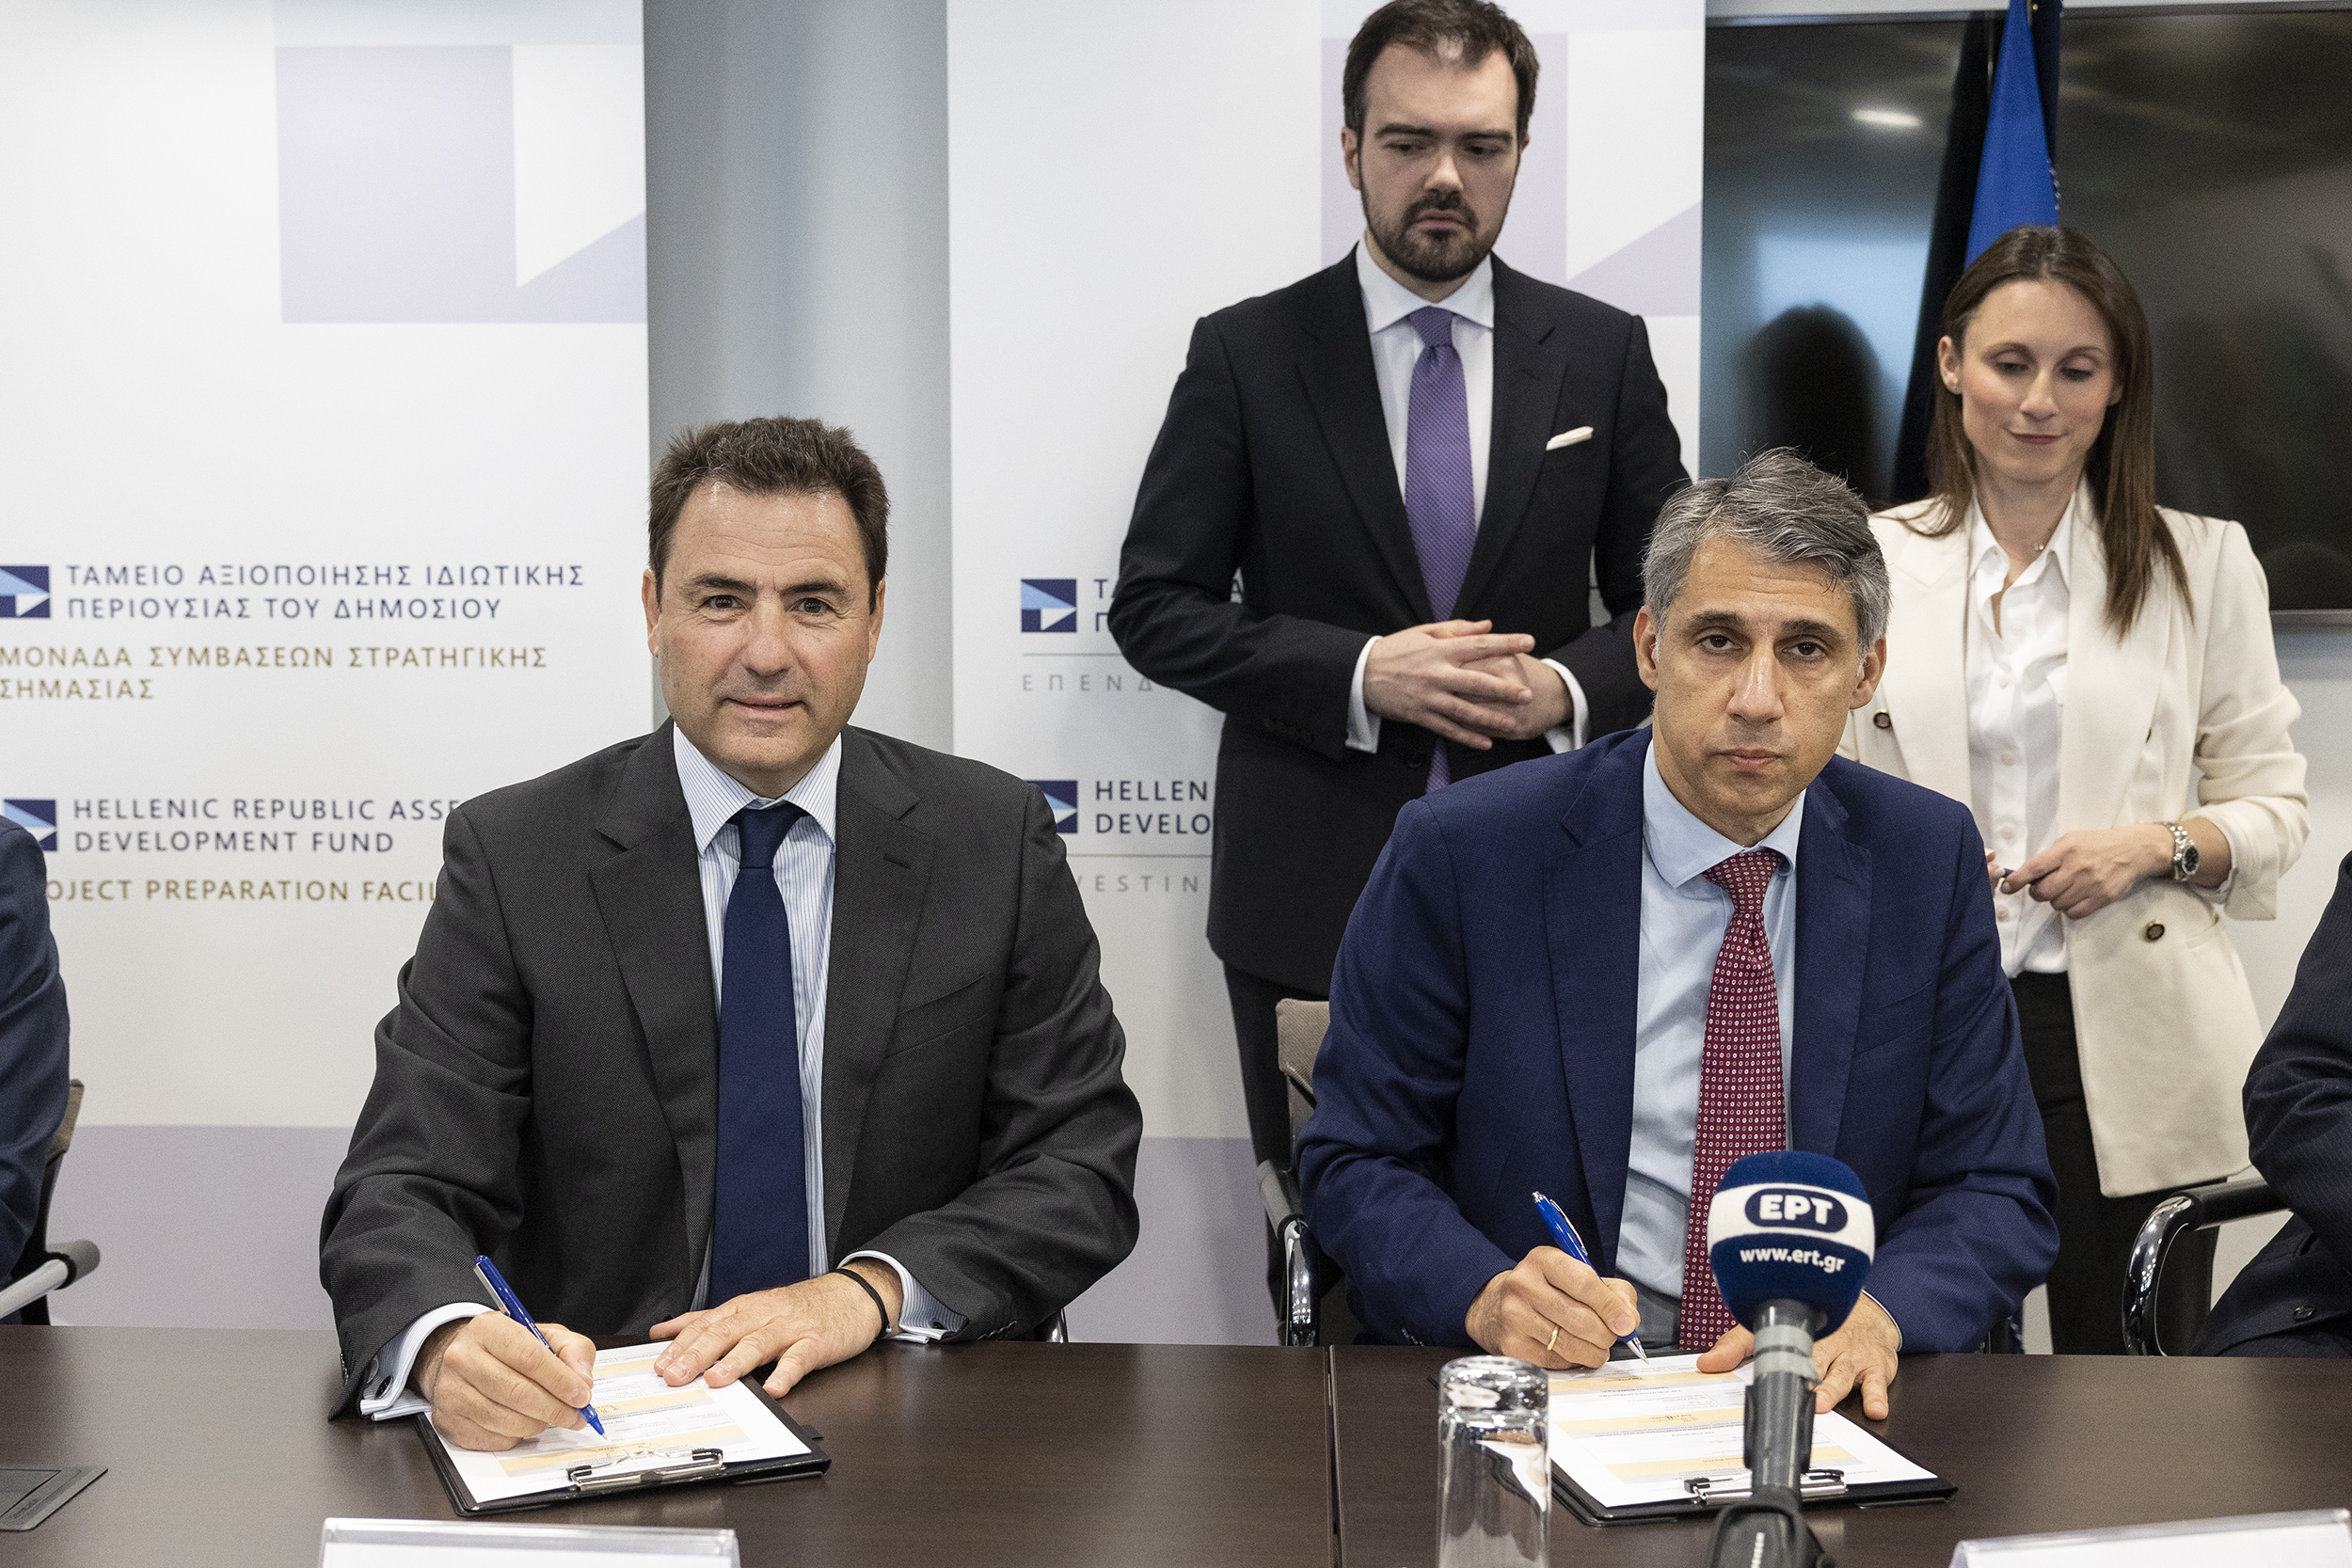 Ο Διευθύνων Σύμβουλος του ΤΑΙΠΕΔ, Δημήτρης Πολίτης, με τον Πρόεδρο και Διευθύνοντα Σύμβουλο της Εταιρείας Συμμετοχών Λιμένος Ηγουμενίτσας Α.Ε., Paul Kyprianou.